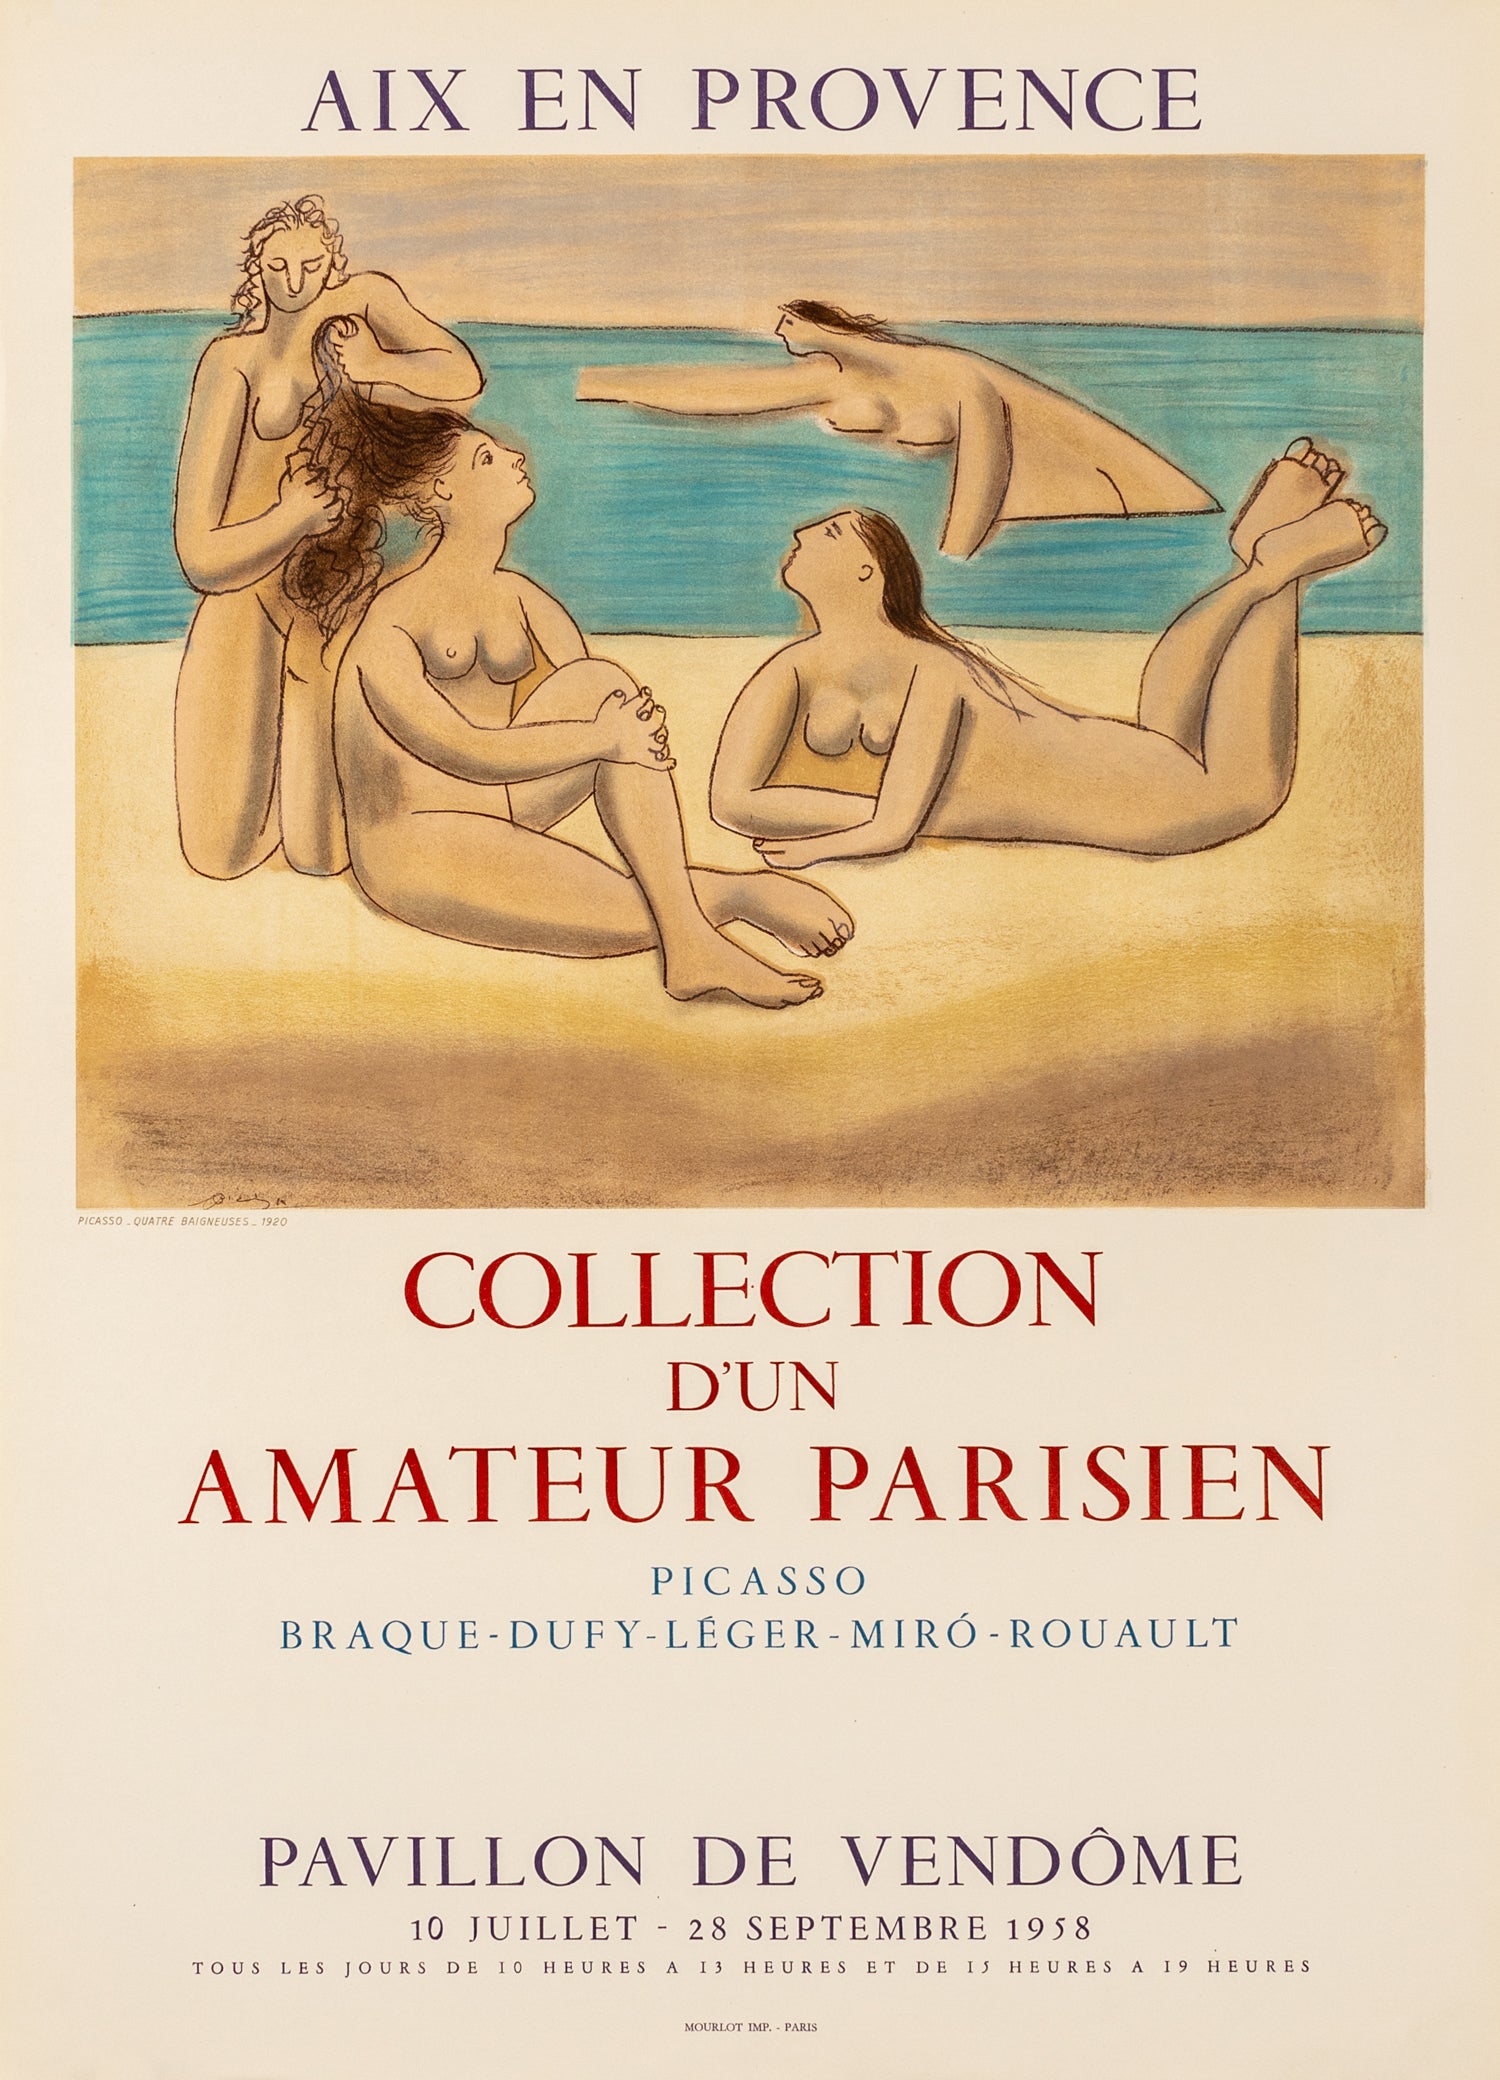 Collection d'un Amateur Parisien - Aix en Provence, (after) Pablo Picasso, 1958 - Mourlot Editions - Fine_Art - Poster - Lithograph - Wall Art - Vintage - Prints - Original